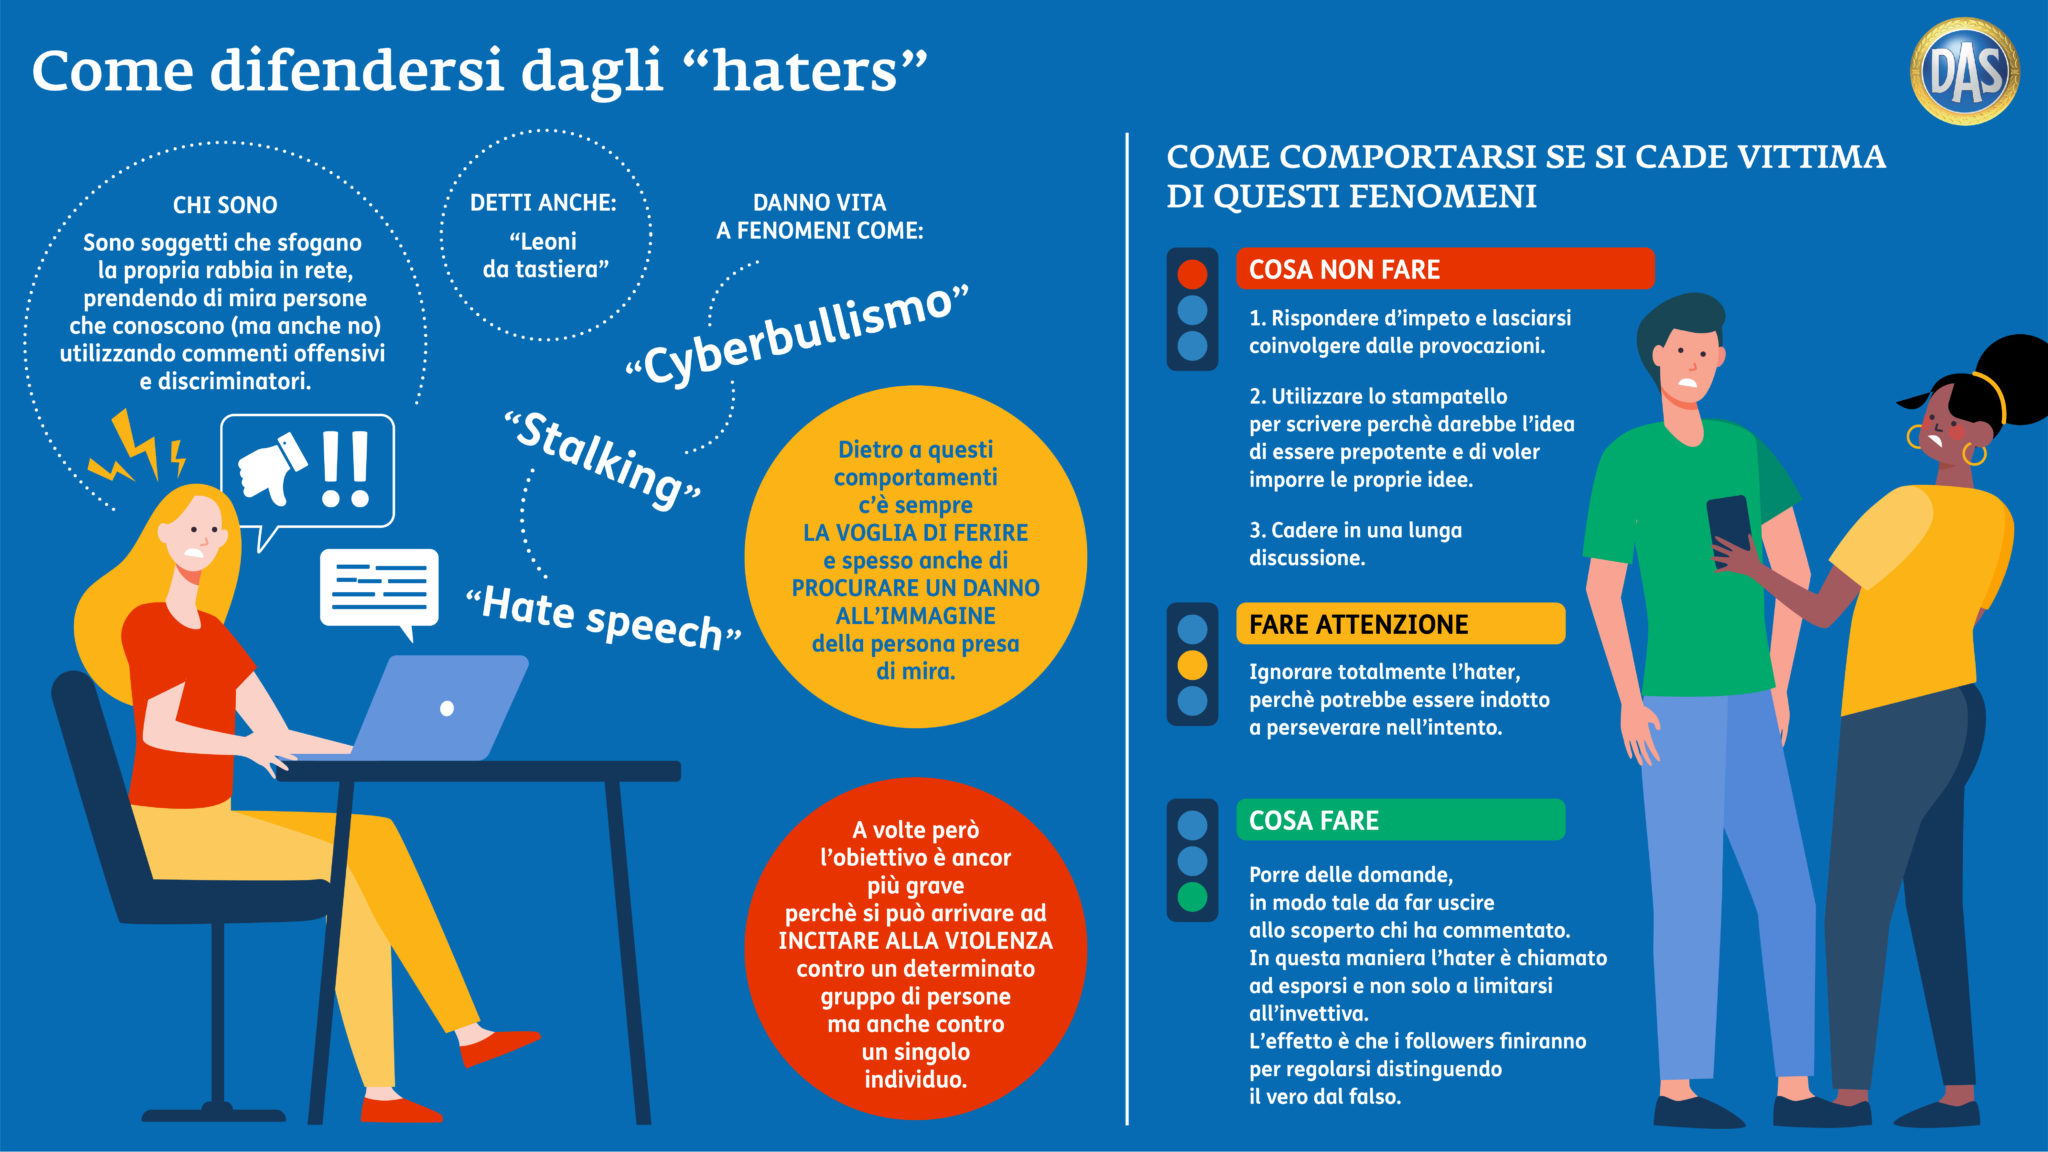 Haters e come difendersi dagli attacchi su internet